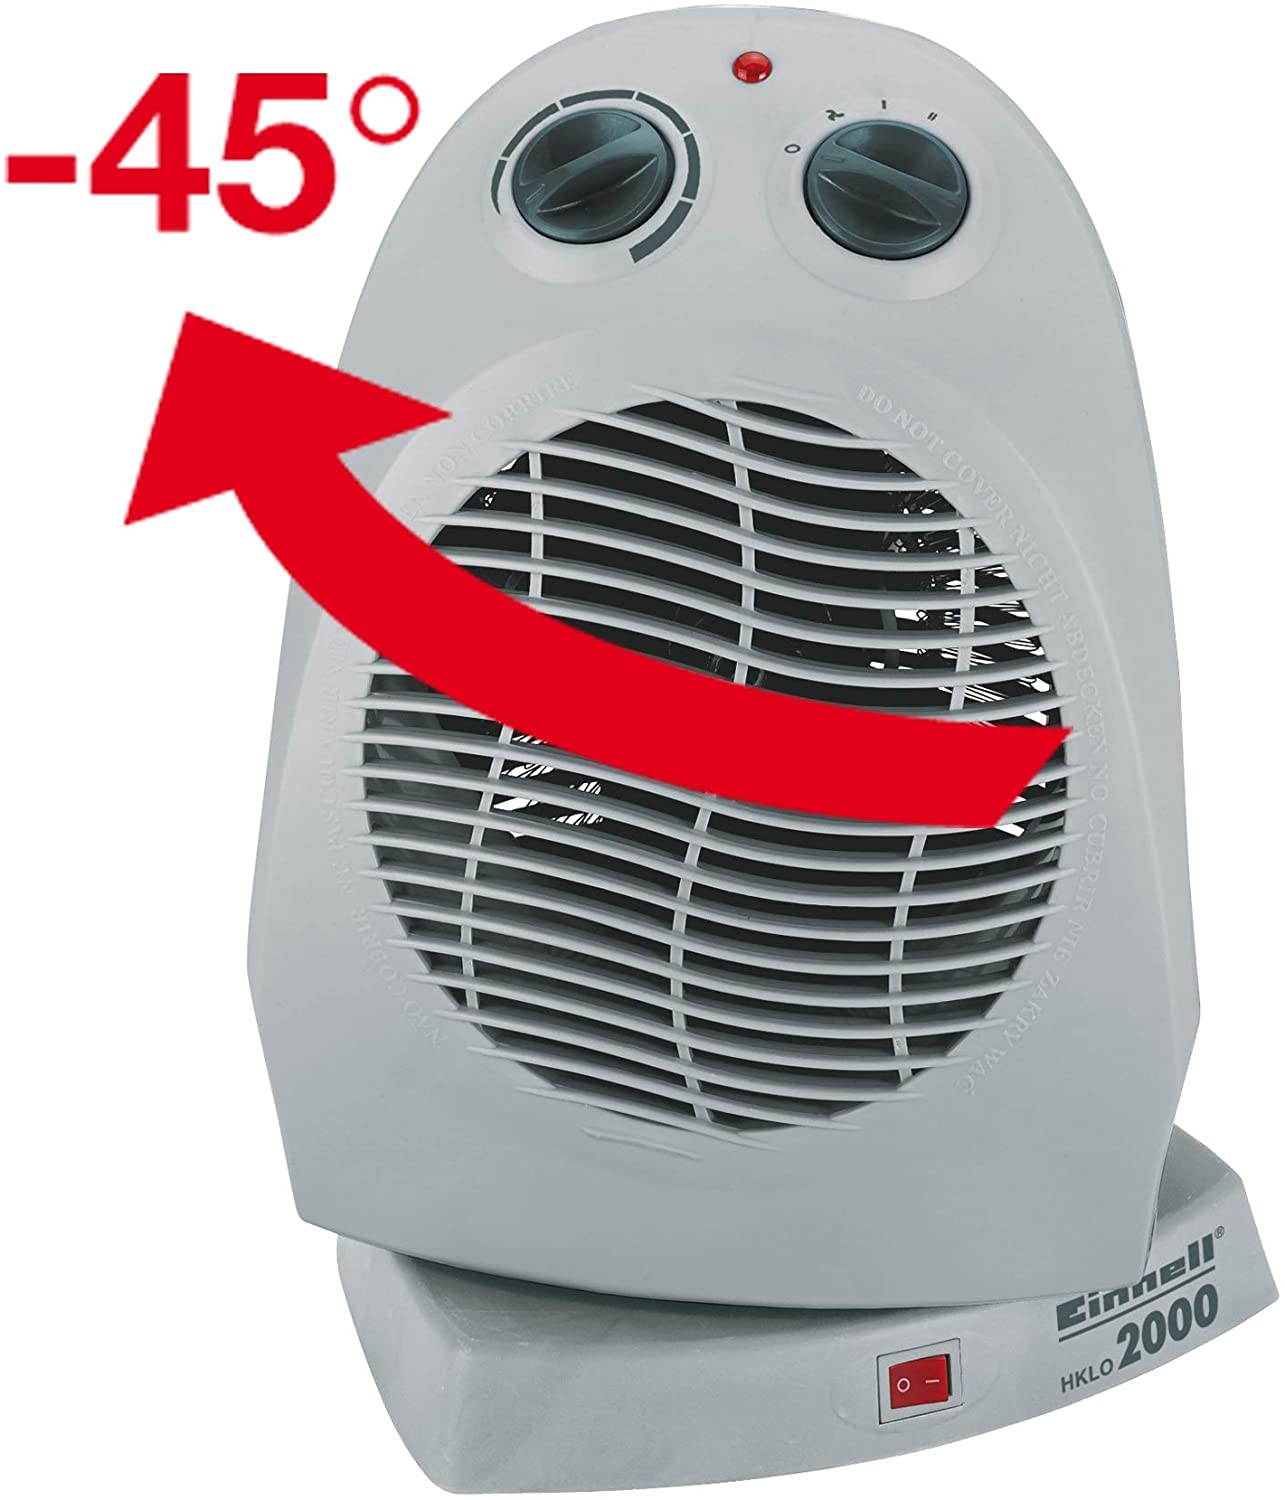 Thermostatregler, 2 Heizstufen, Sicherheitsabschaltung bei Überhitzung/Umfallen)